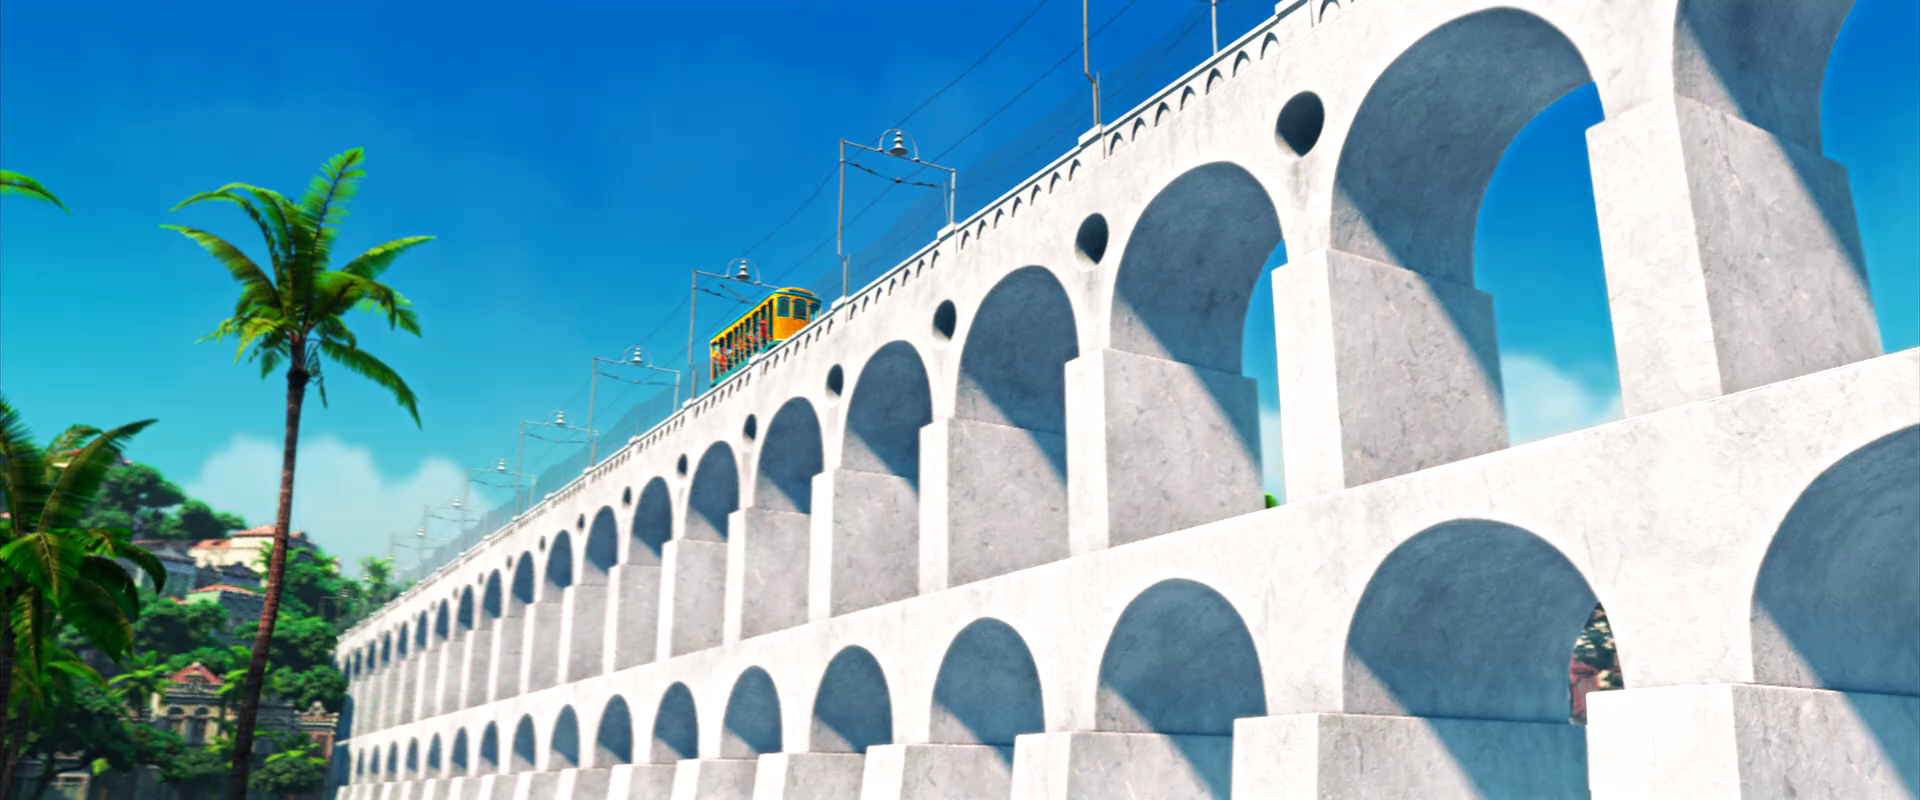 Lapa Arches | Rio Wiki | FANDOM powered by Wikia1920 x 800